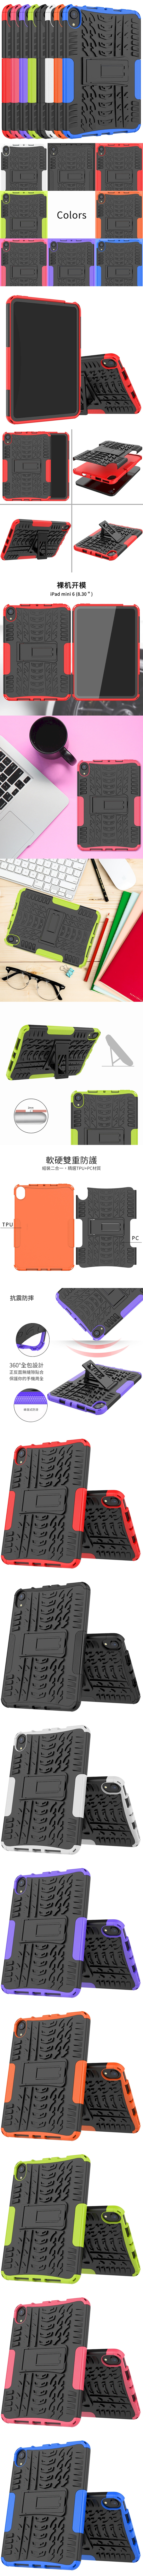 鎧甲盾TPU+PC軟硬殼支架保護殼平板保護套背蓋